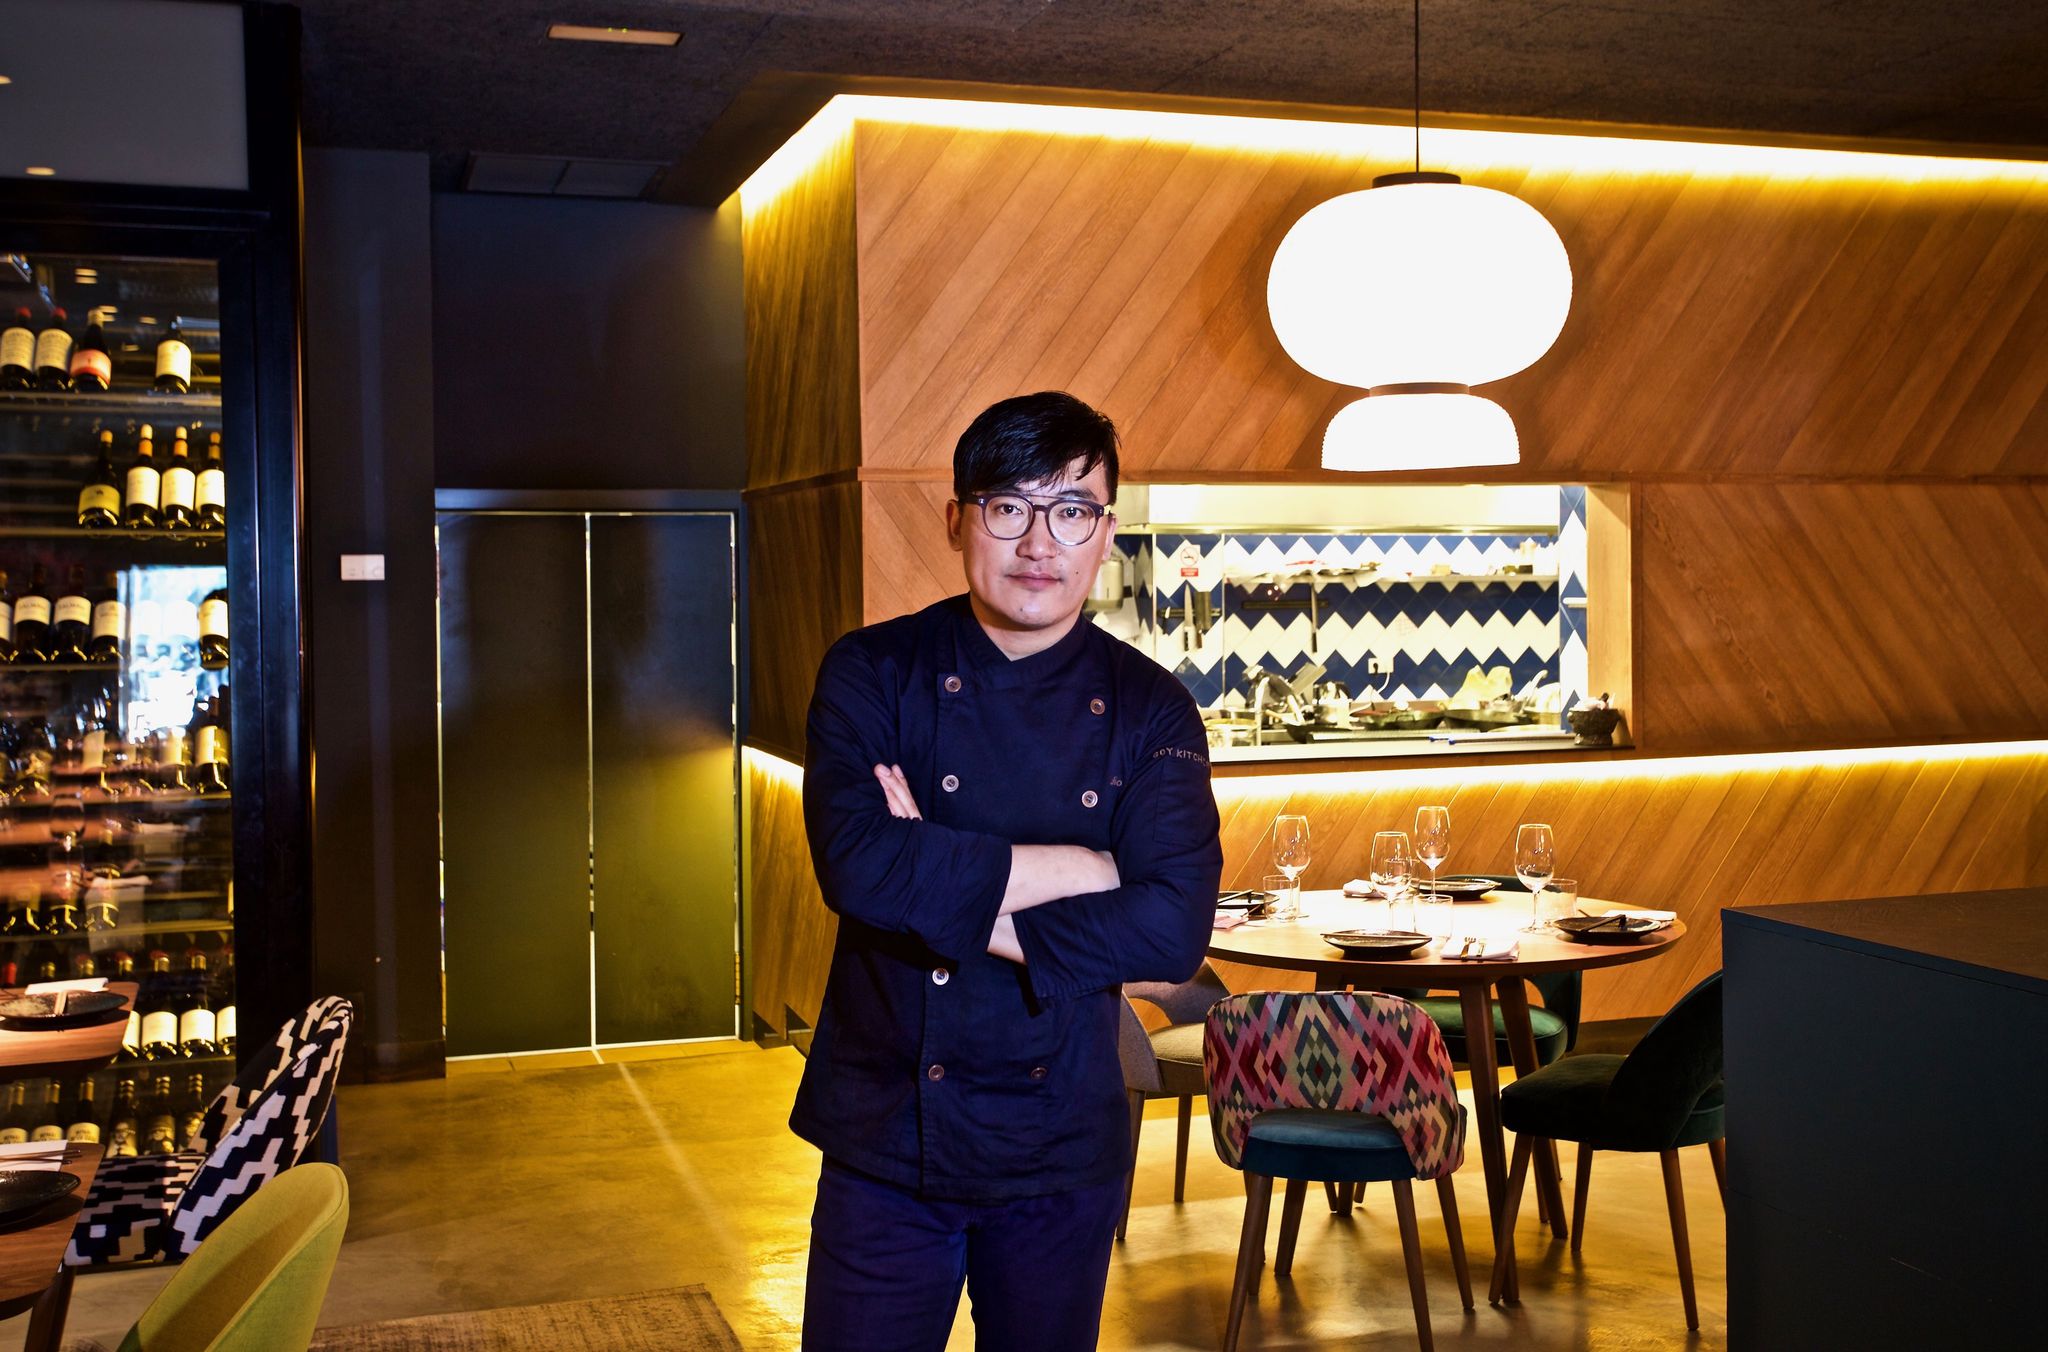 Julio es uno de los chefs chinos más conocidos en Madrid